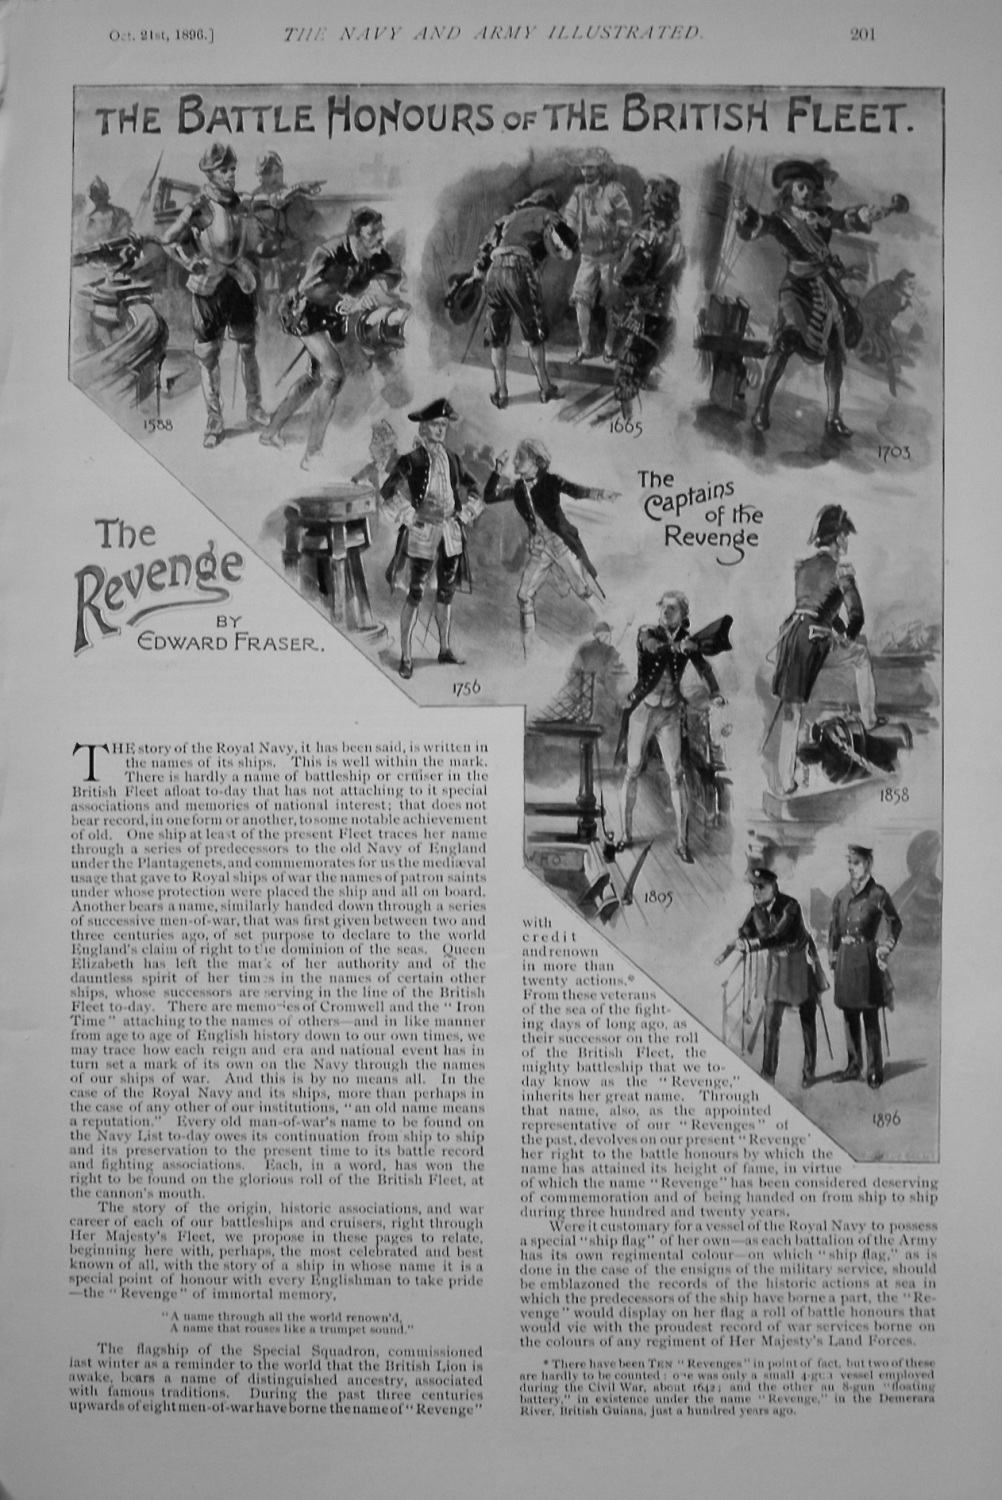 The Revenge. Written by Edward Fraser. October 21st, 1896.